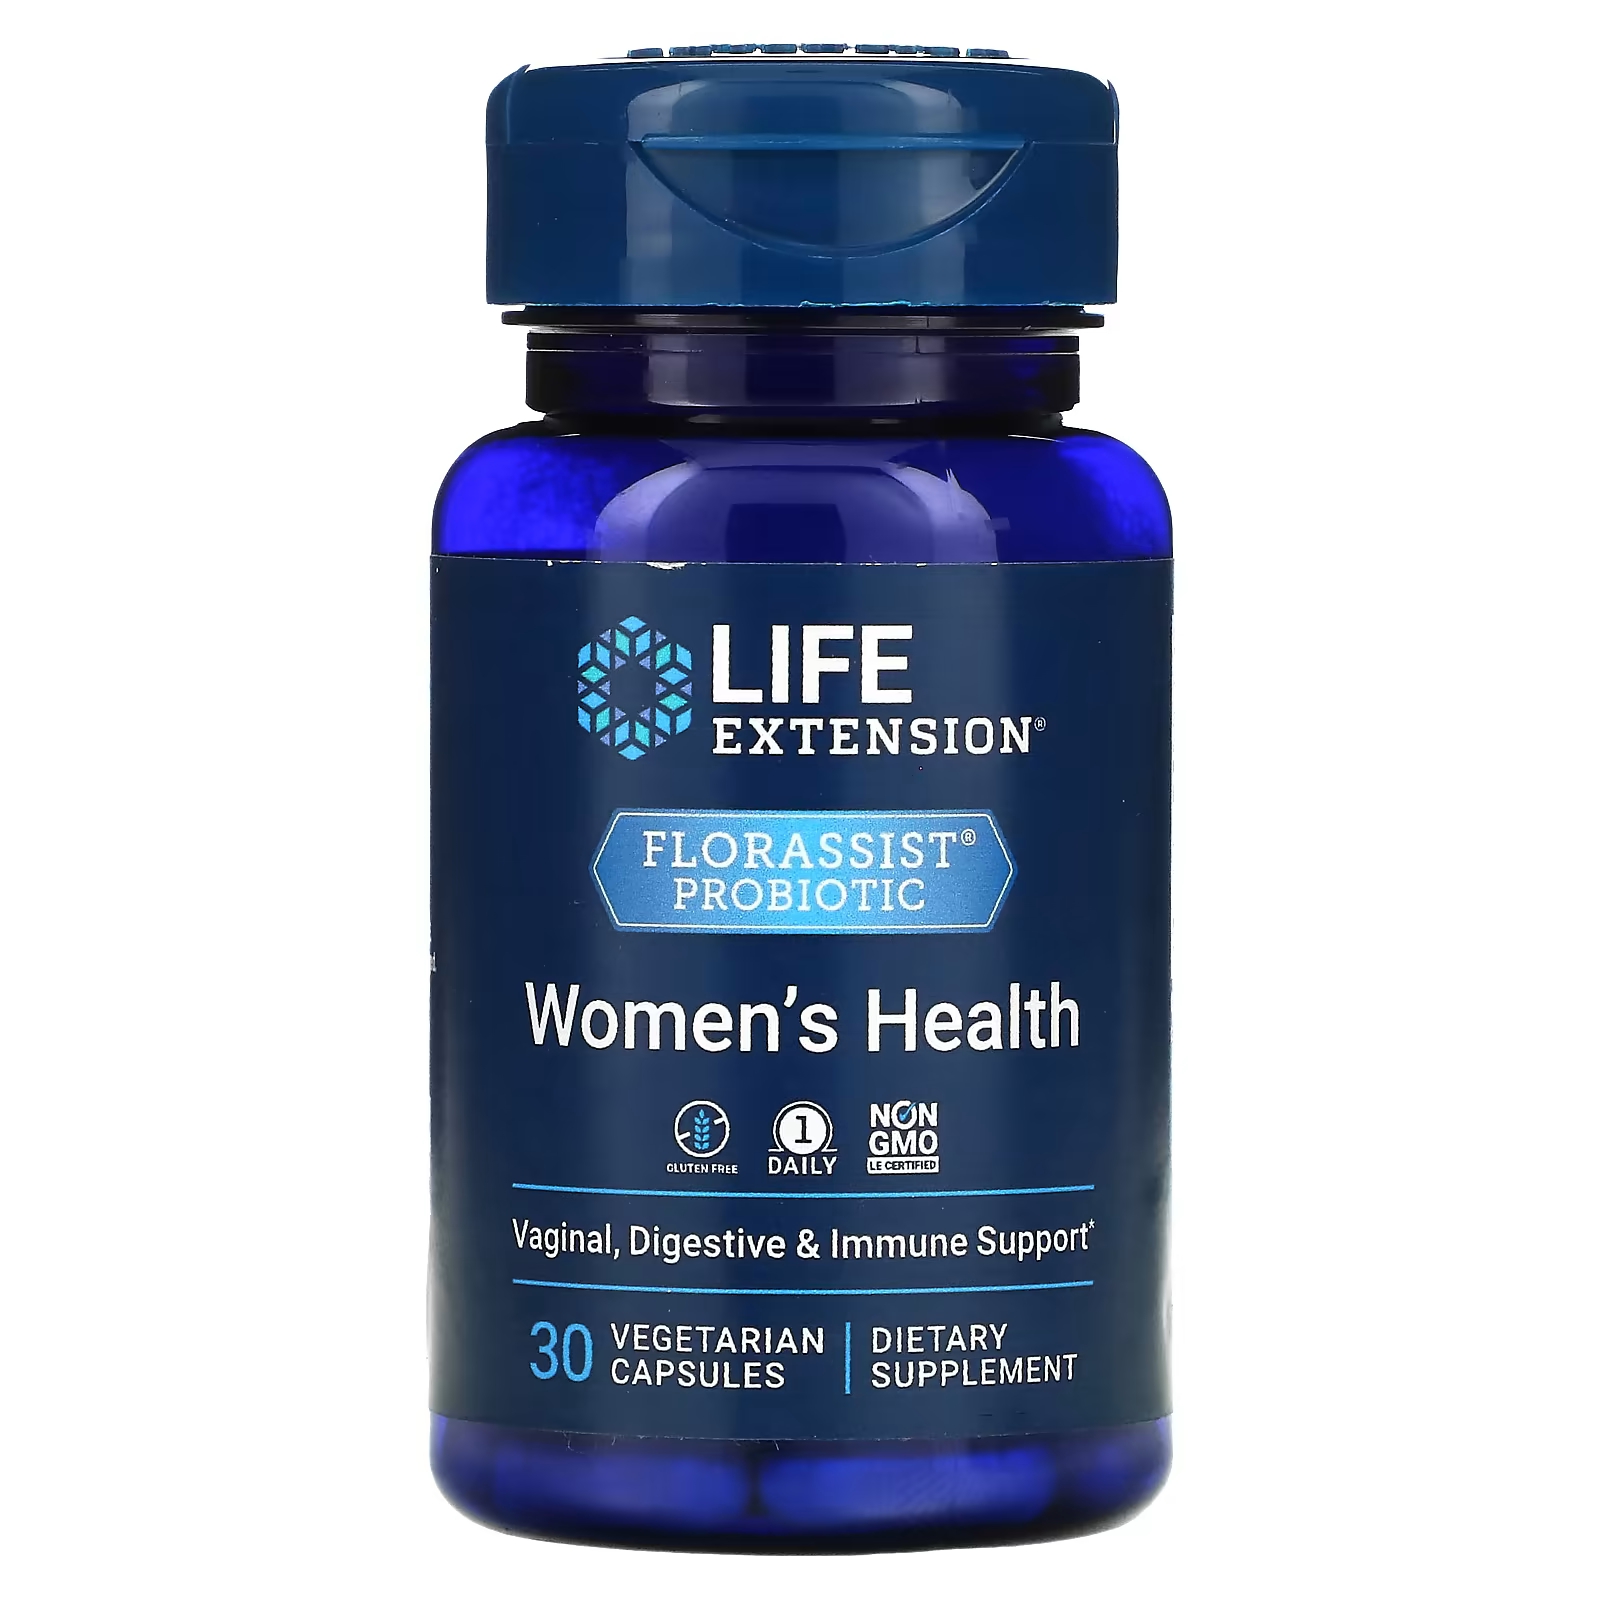 Пробиотик Life Extension Florassist для женского здоровья, 30 капсул life extension florassist пробиотик для здоровья женщин 30 вегетарианских капсул